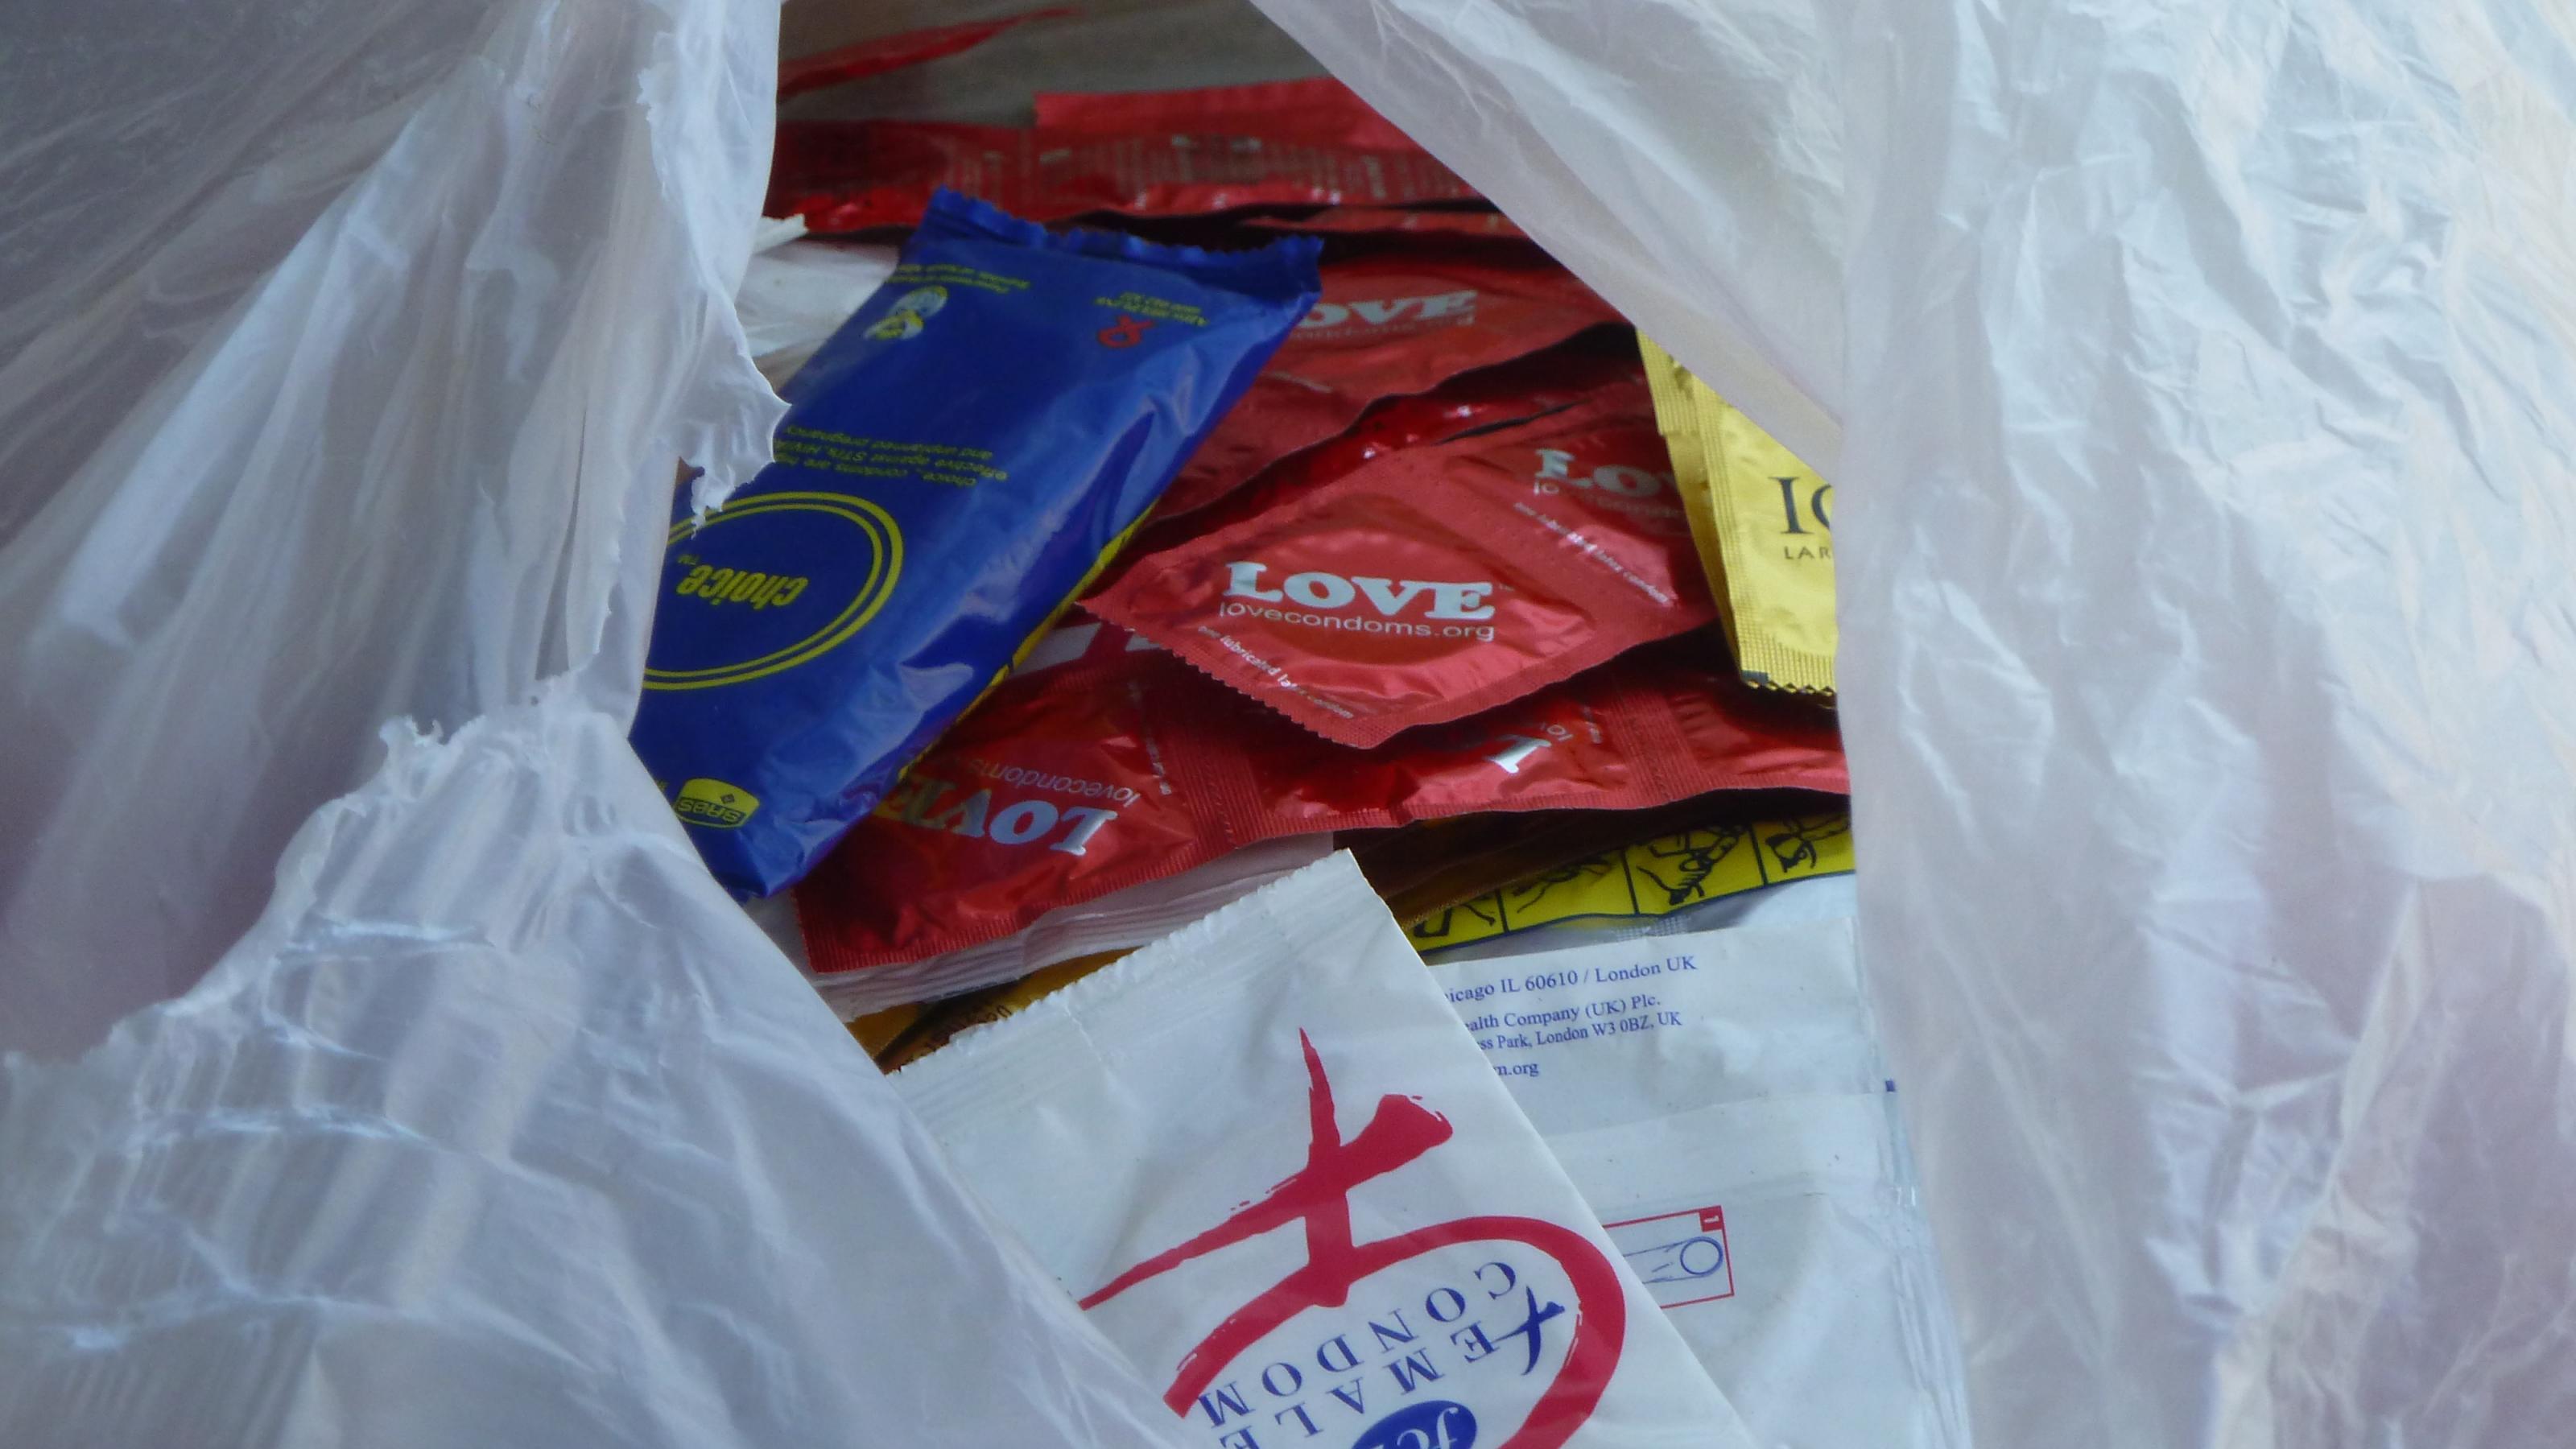 Zu sehen ist eine halb aufgerissene, weiße Tüte, in der Kondome in unterschiedlichen Verpackungen für die Verteilung bereitliegen.